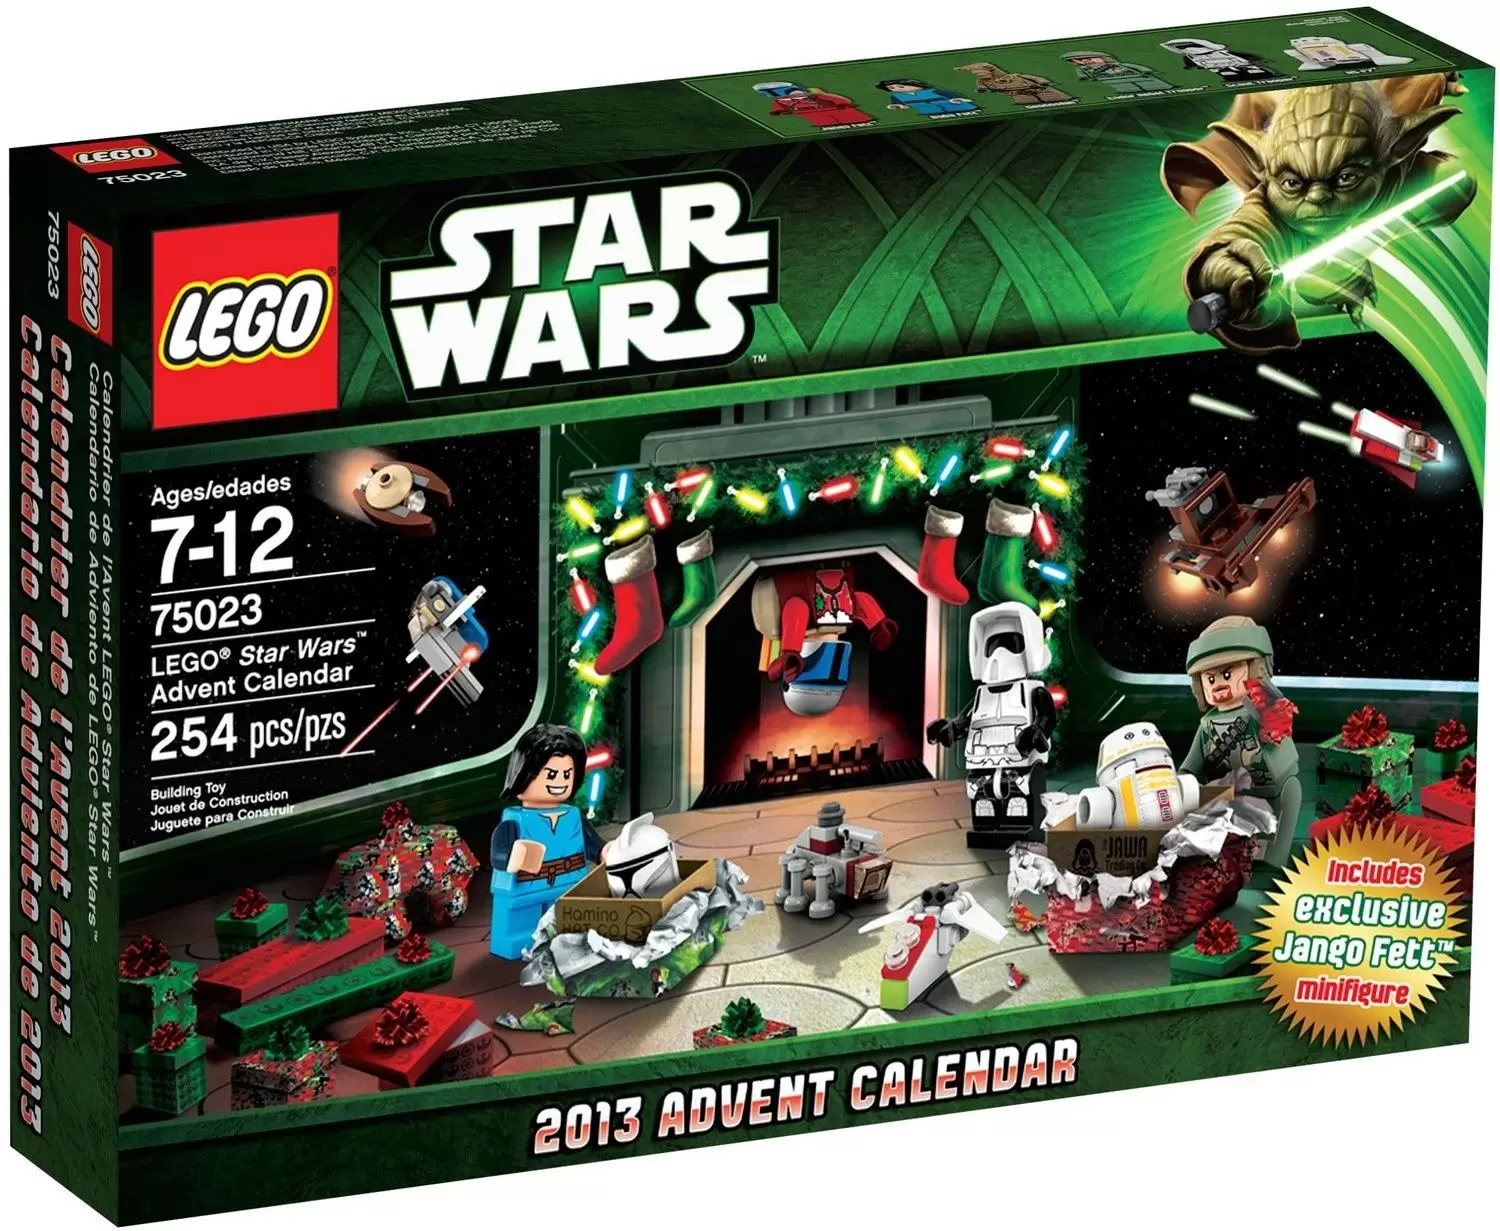 LEGO Star Wars - Star Wars Advent Calendar 2013